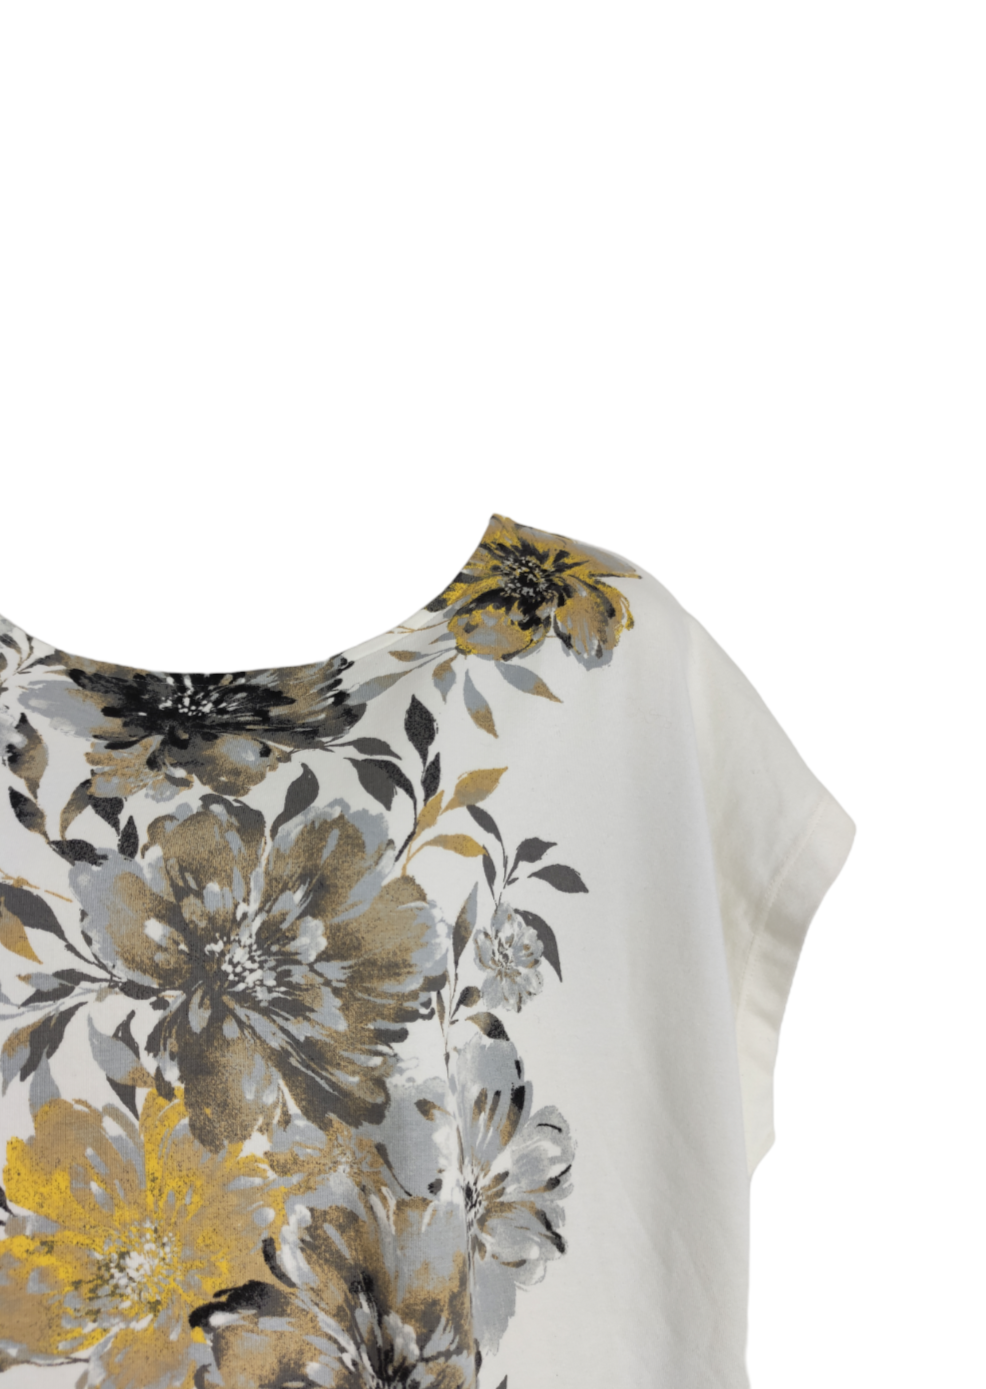 Γυναικεία Μπλούζα D&CO με Φλοράλ σχέδιο σε Λευκό-Κρεμ Χρώμα (L/XL)